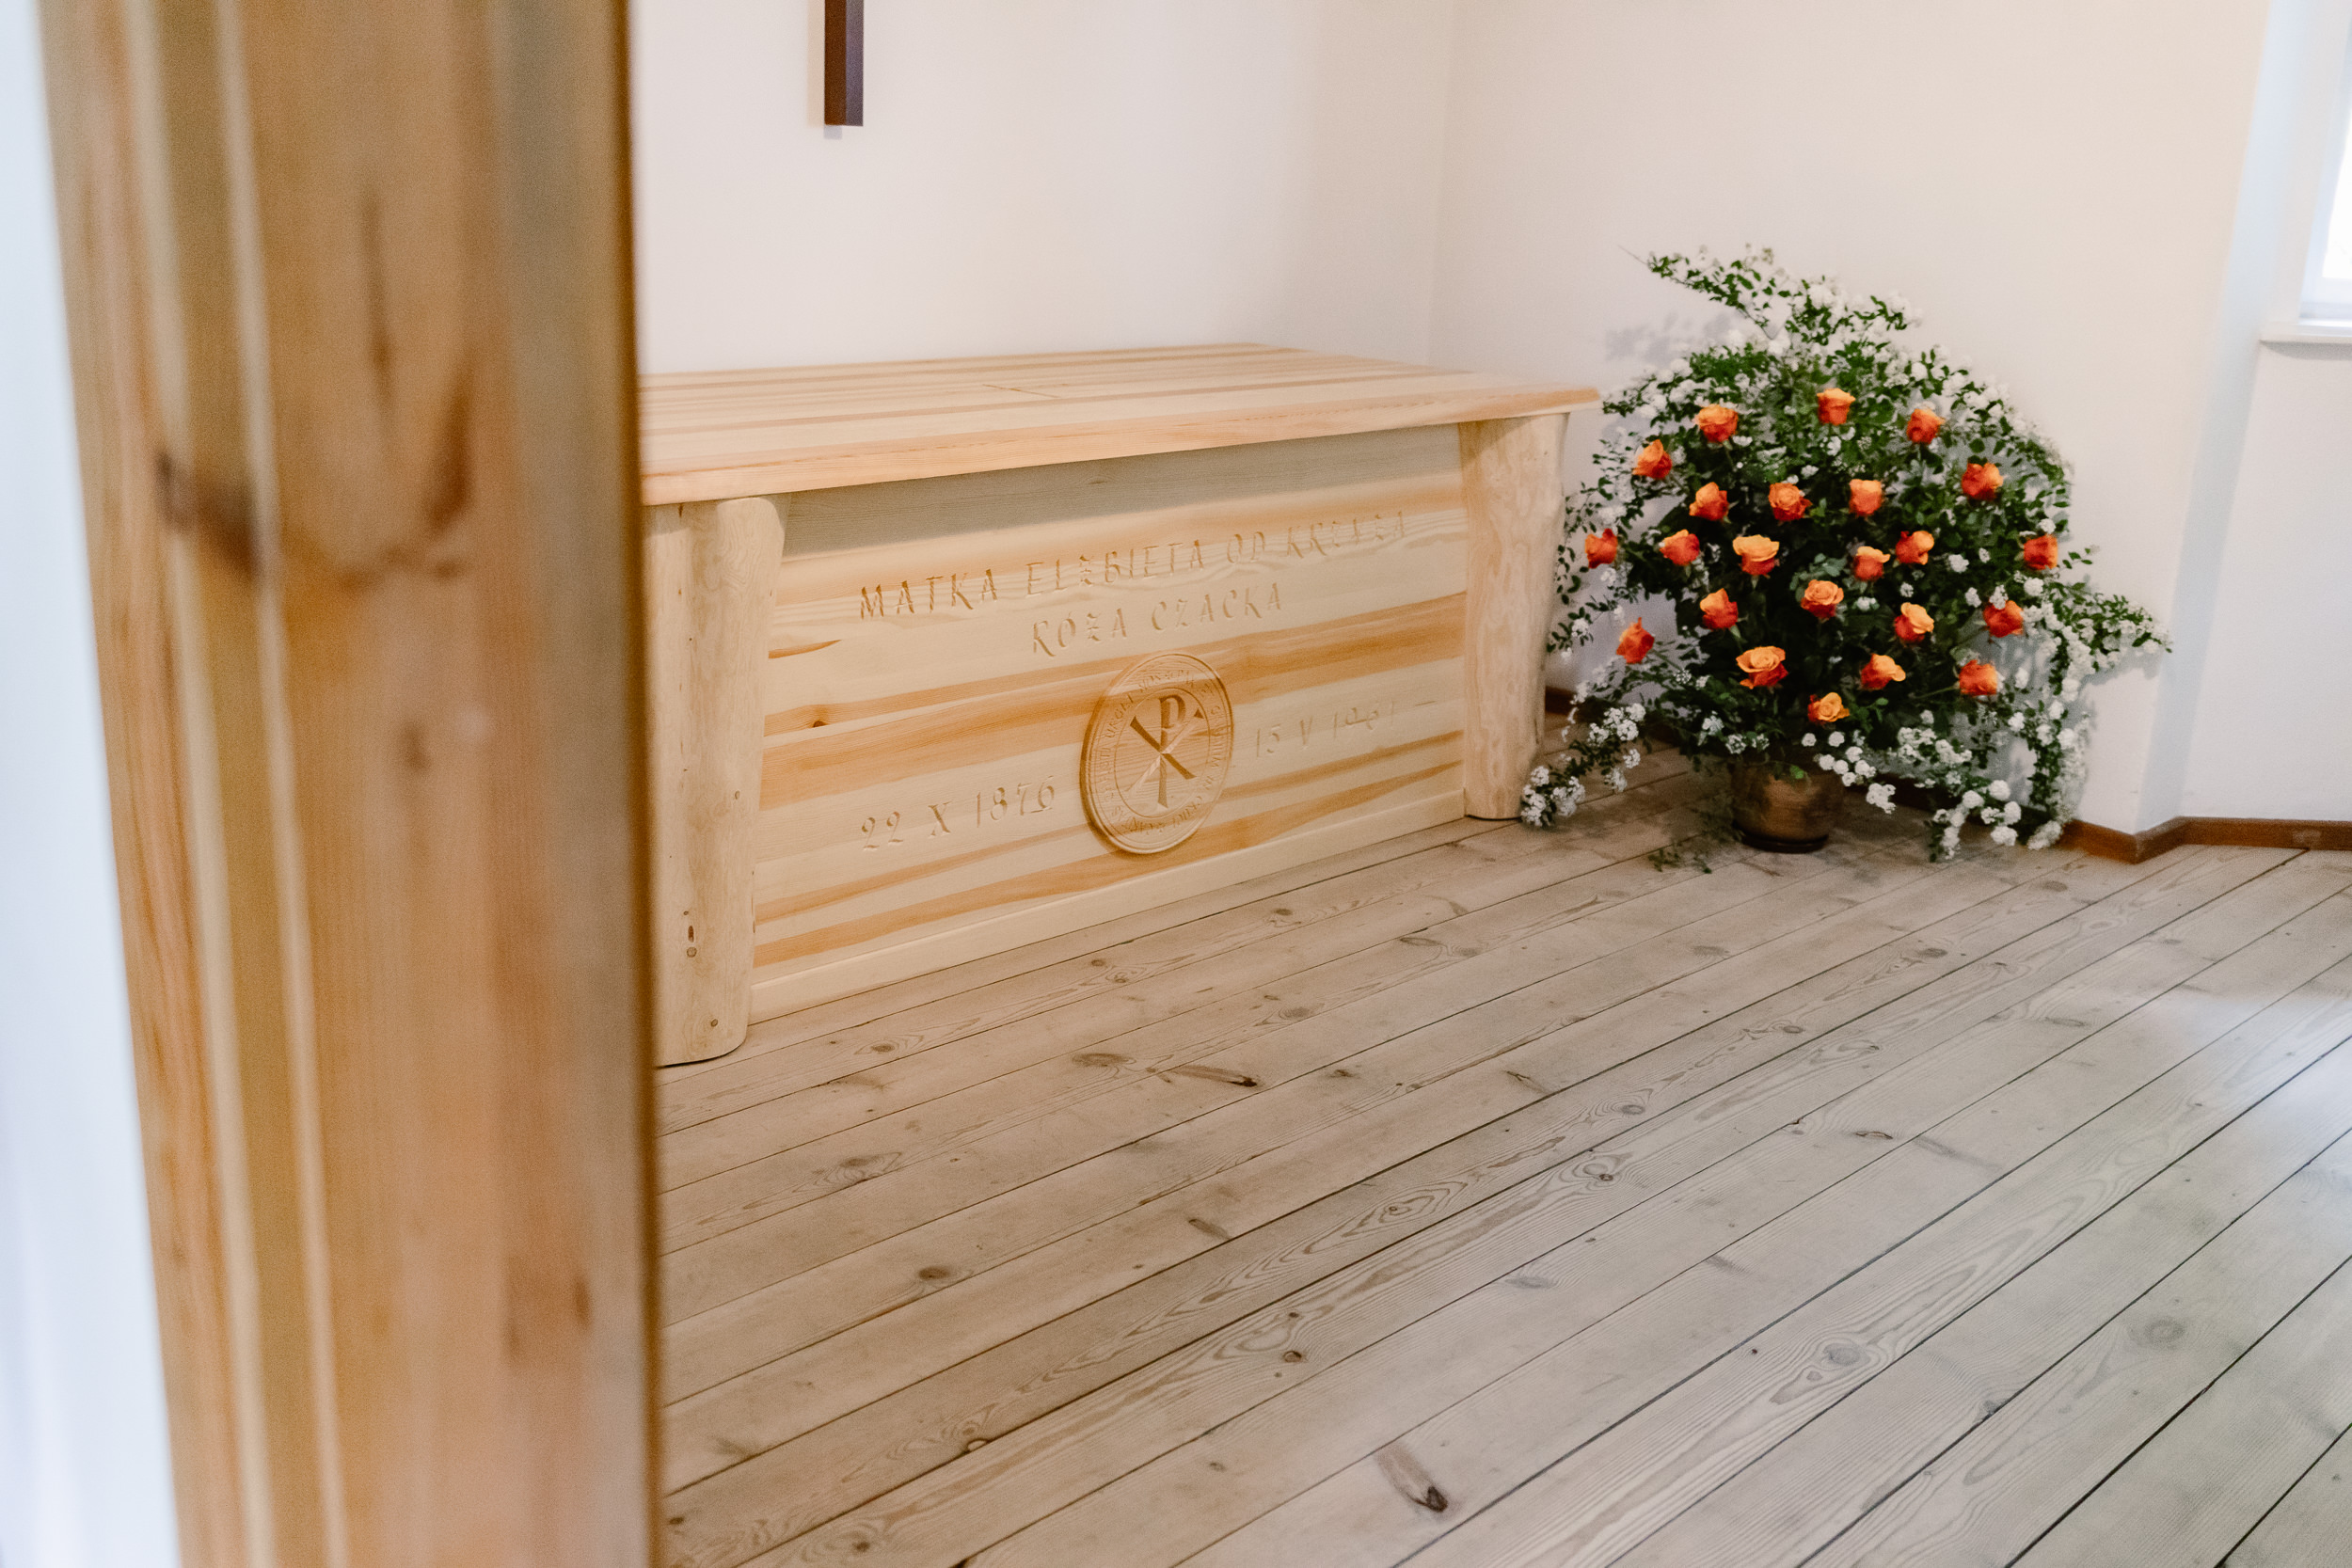 Sarkofag bł Matki Czackiej, obok stoją kwiaty.